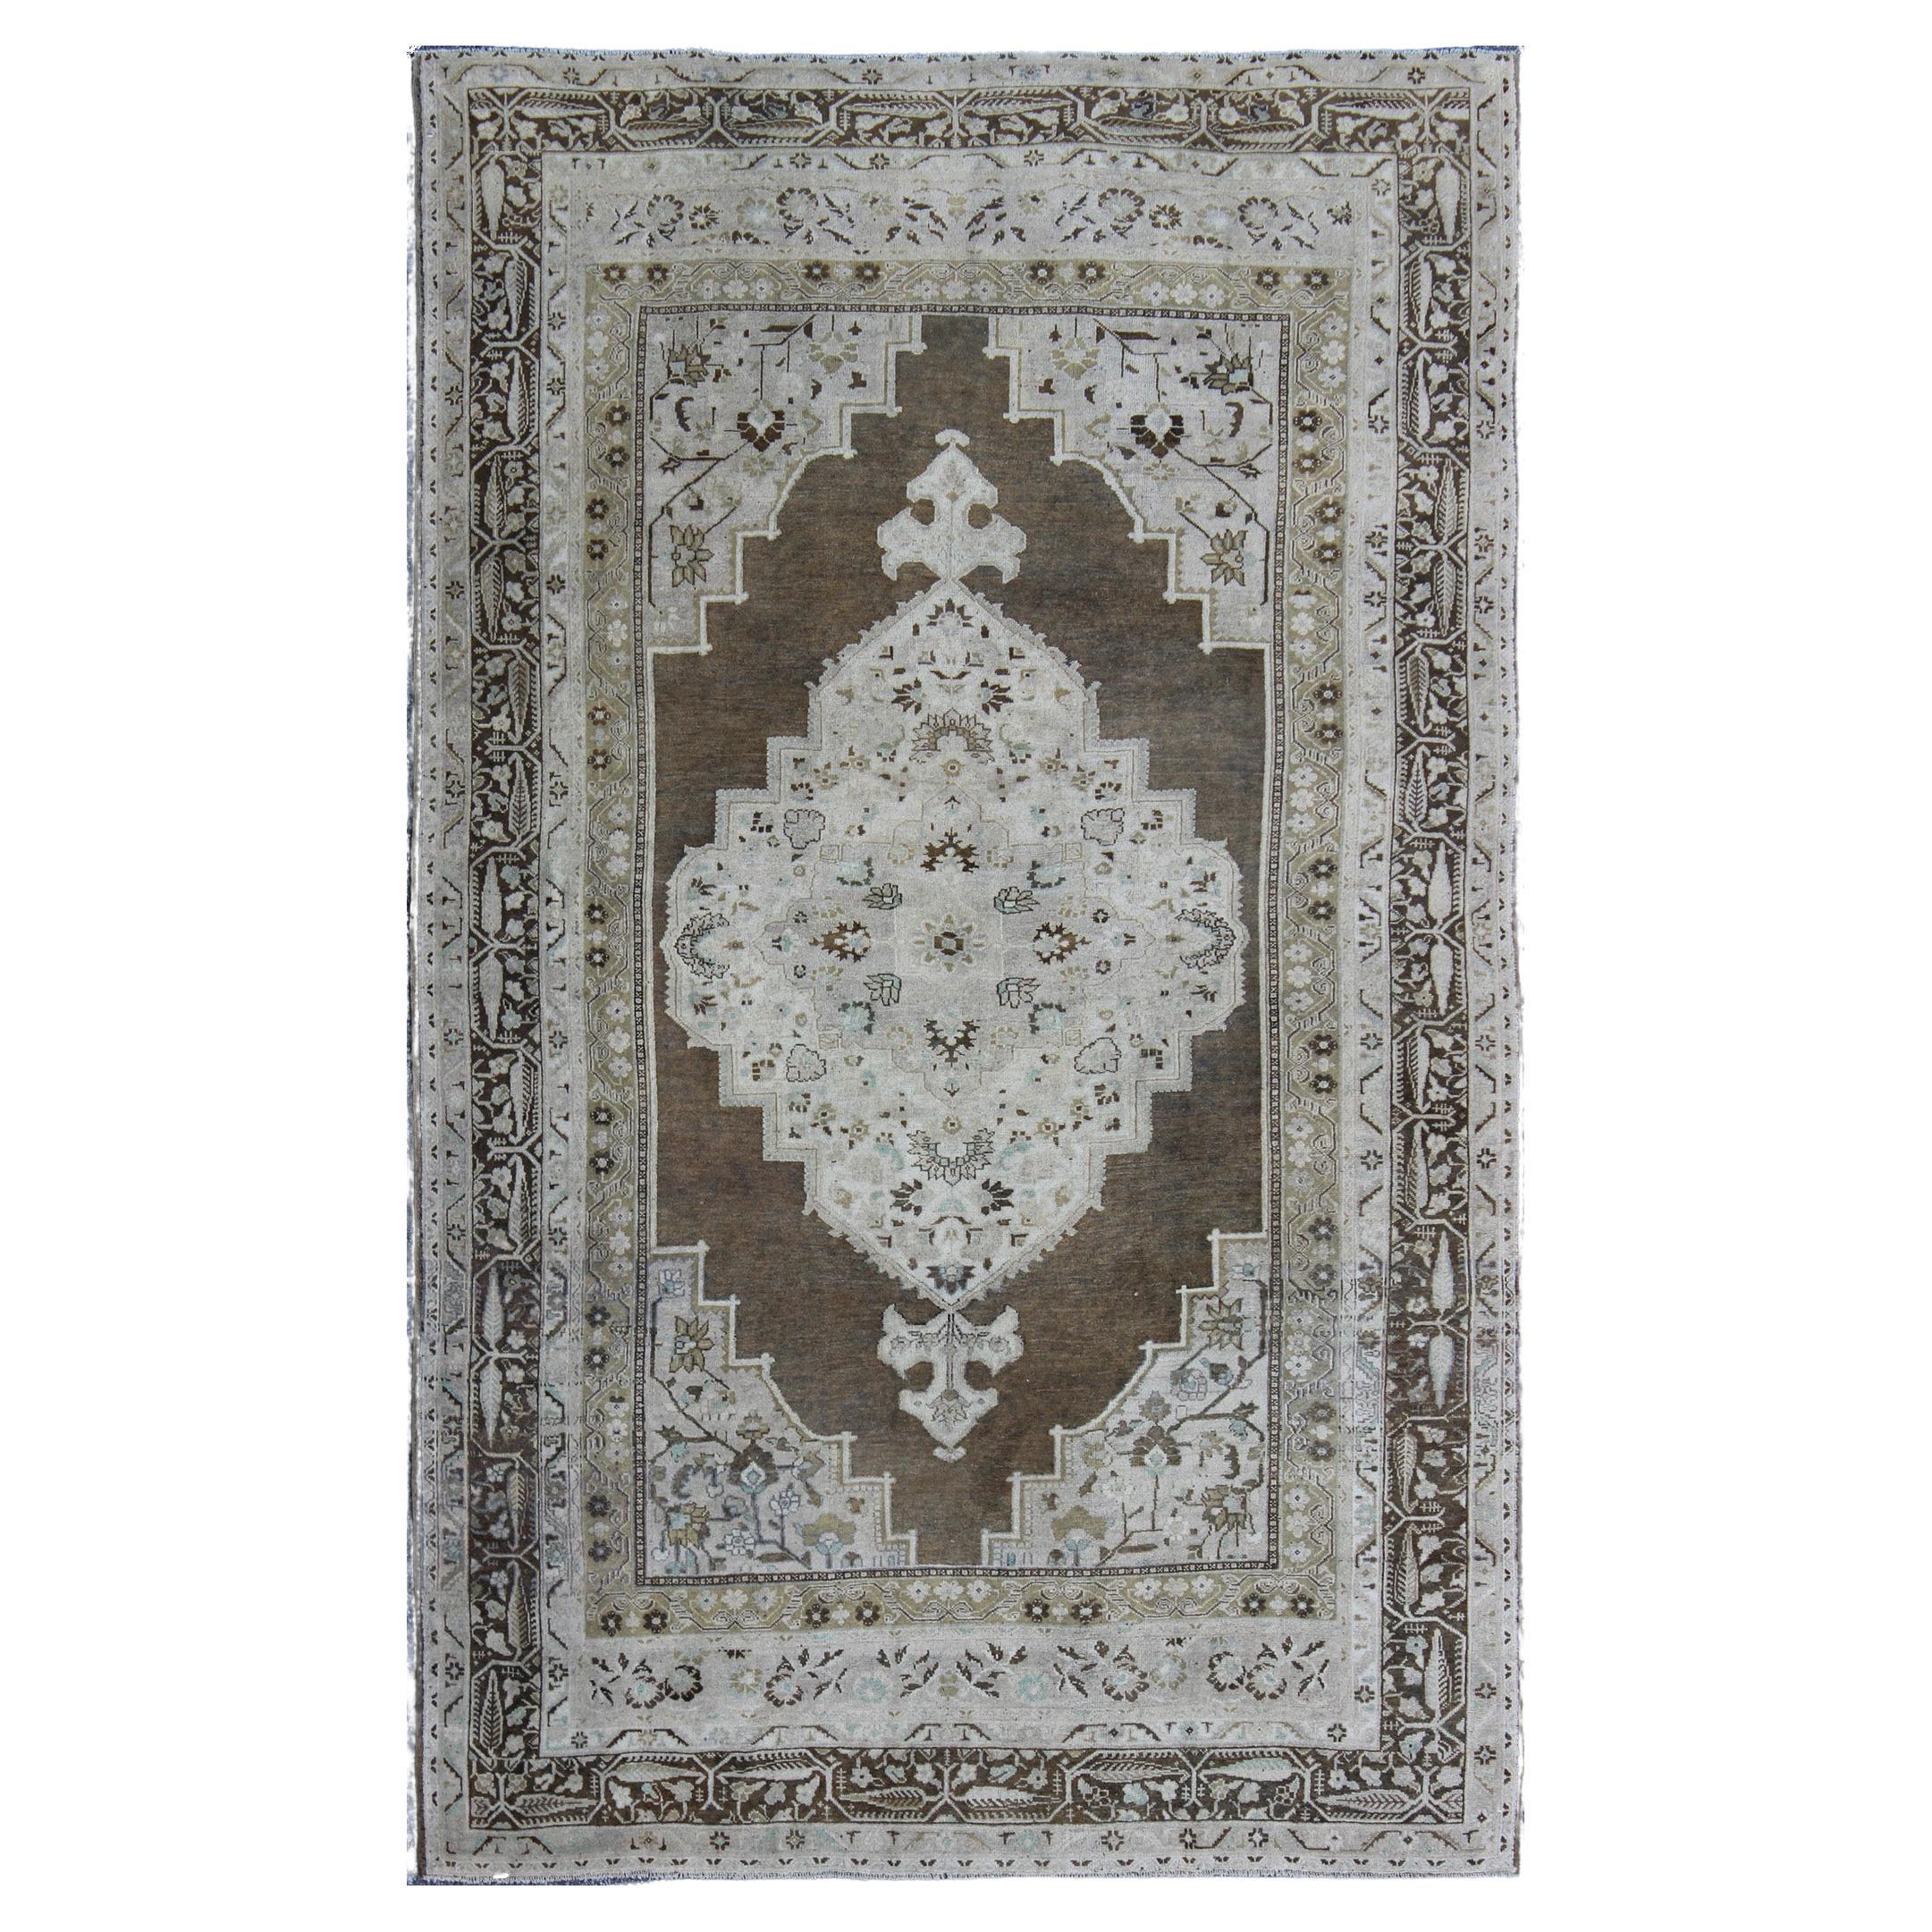 Türkischer Oushak-Teppich mit Medaillon in Braun, Grün und Neutralen Farben